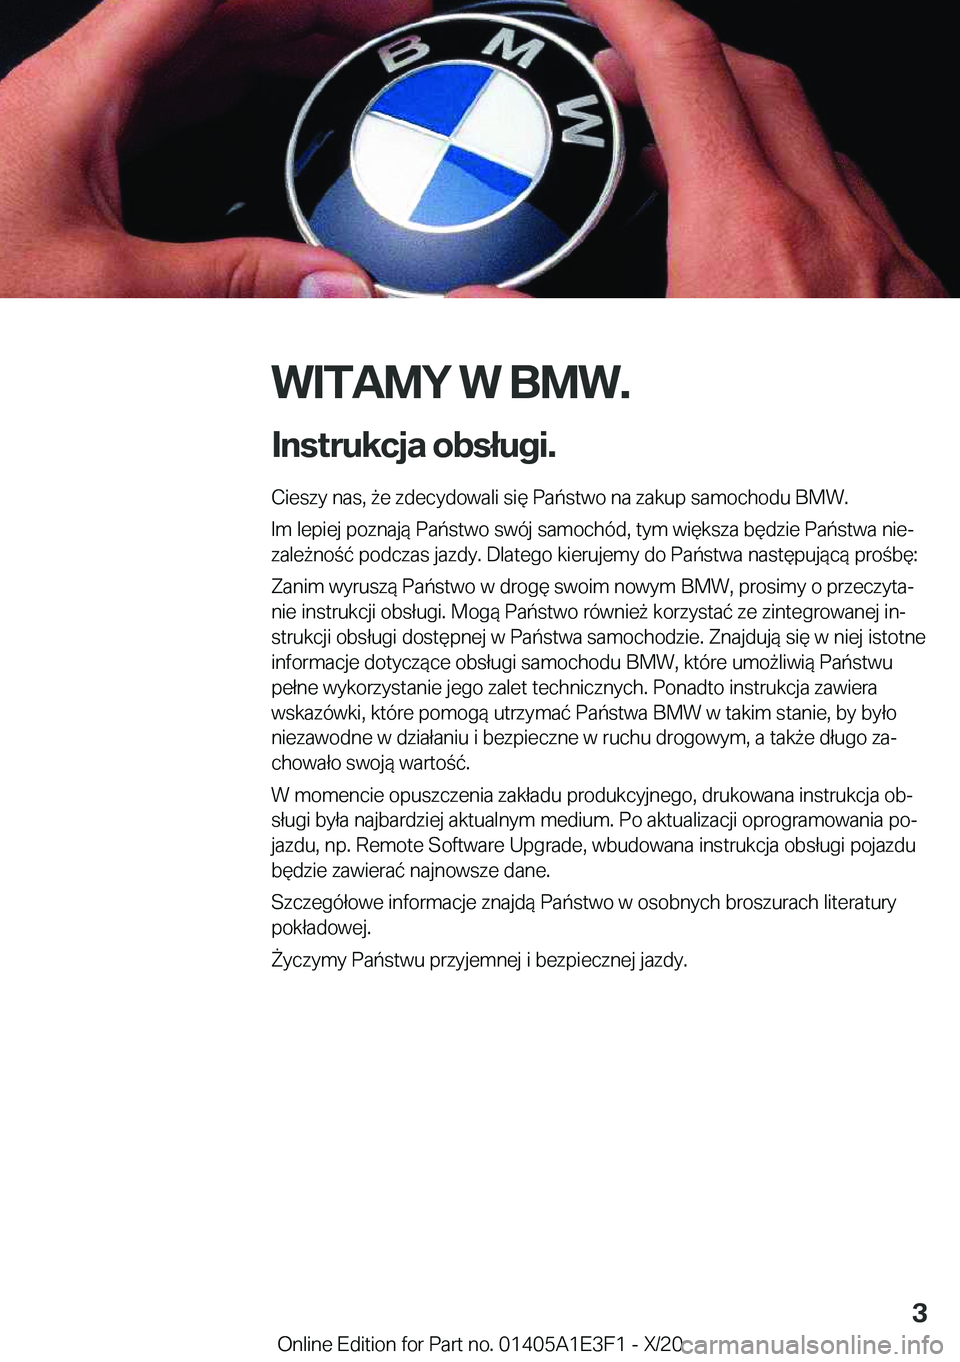 BMW M4 2021  Instrukcja obsługi (in Polish) �W�I�T�A�M�Y��W��B�M�W�.
�I�n�s�t�r�u�k�c�j�a��o�b�s�ł�u�g�i�. �C�i�e�s�z�y��n�a�s�,�9�e��z�d�e�c�y�d�o�w�a�l�i��s�i�